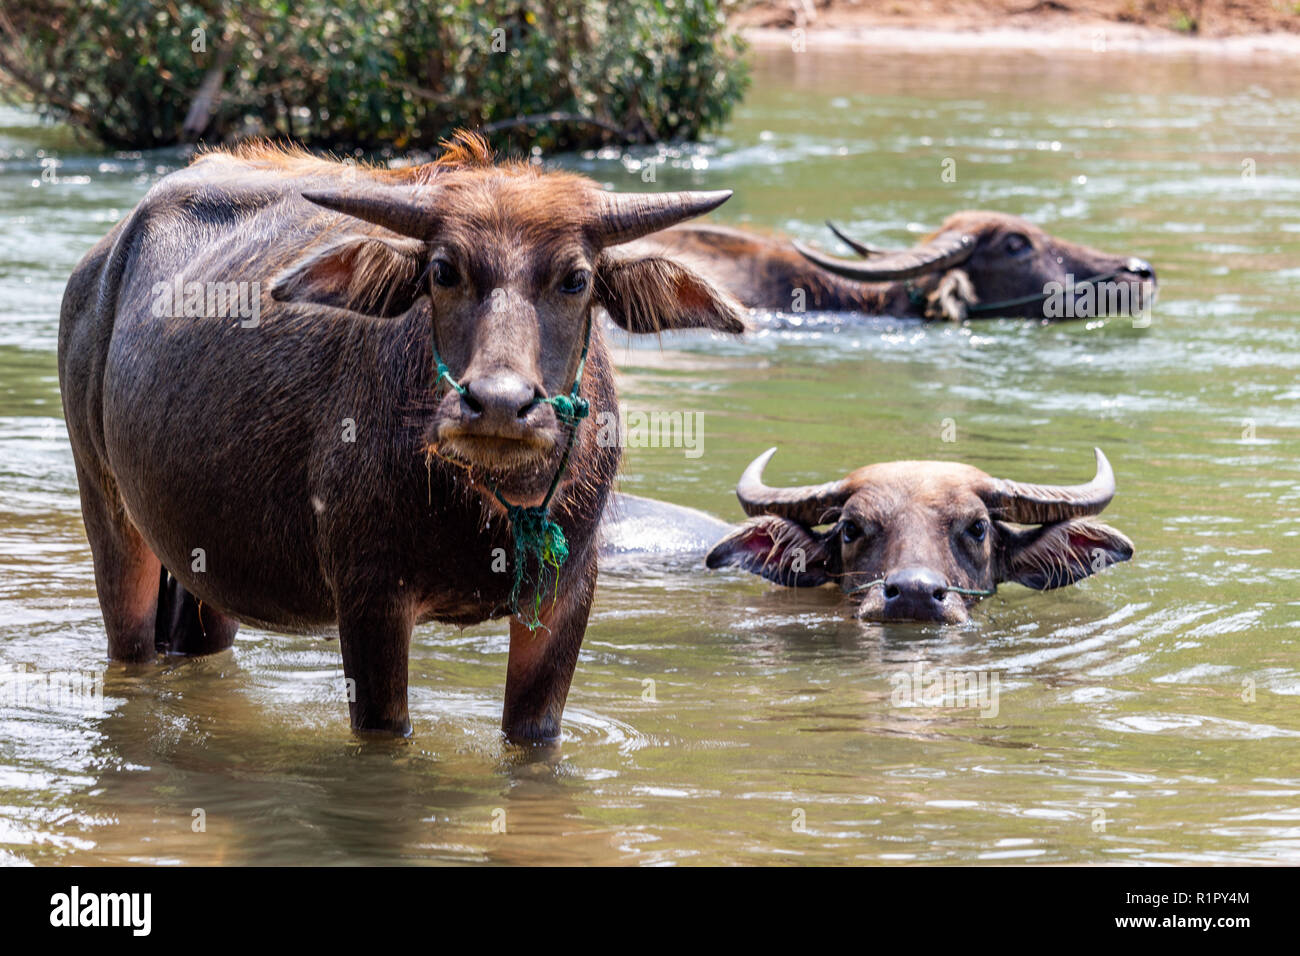 Don Det, Laos - Aprile 22, 2018: Wild bufali nelle acque del fiume Mekong sulle isole 4000 zona vicino al confine cambogiano Foto Stock